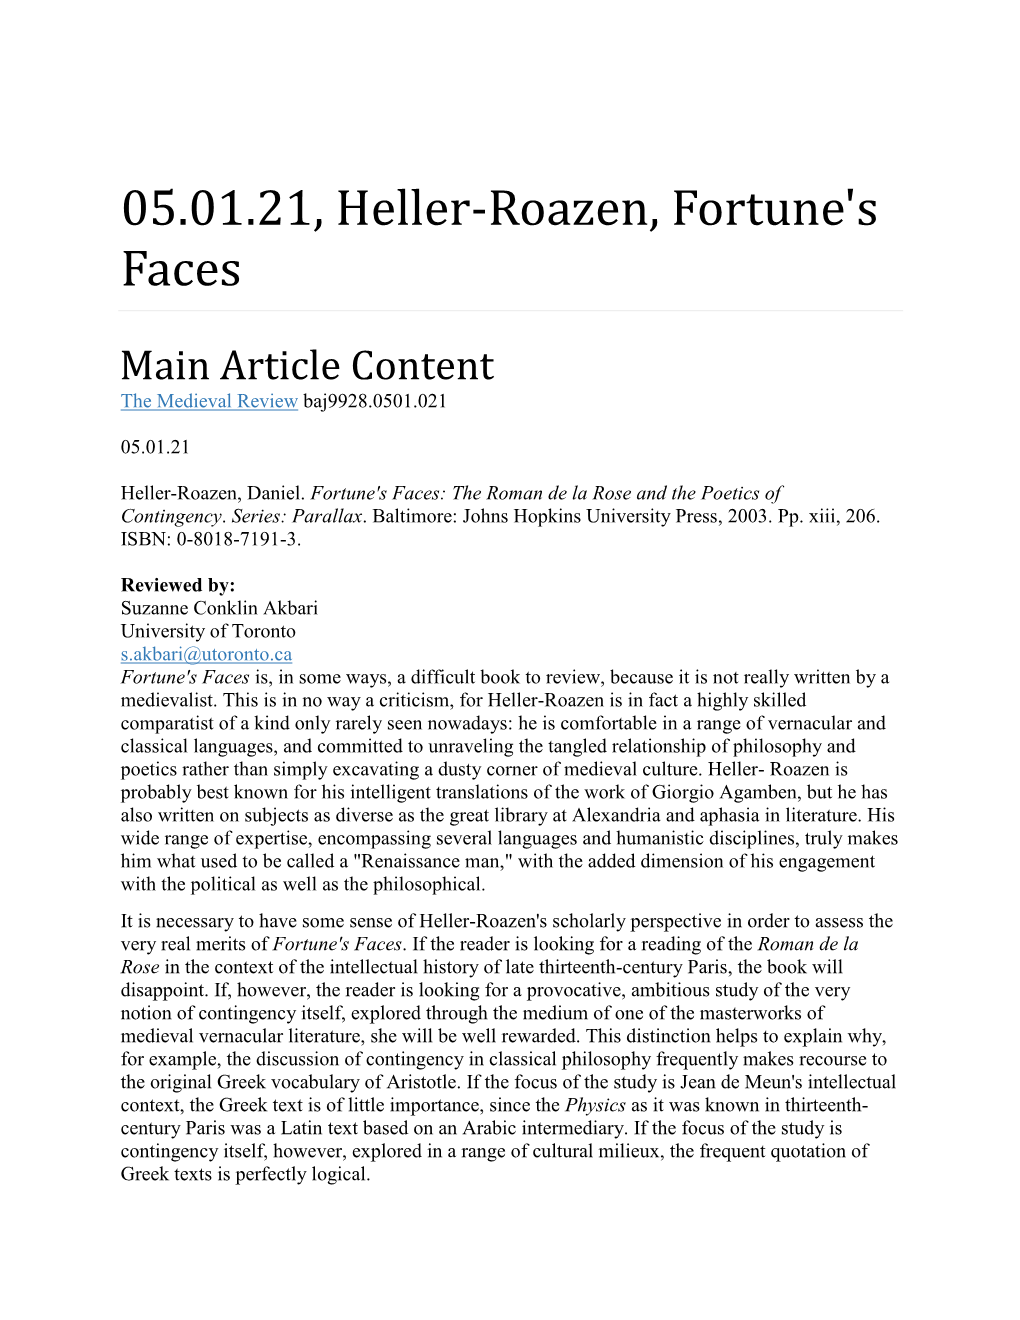 05.01.21, Heller-Roazen, Fortune's Faces